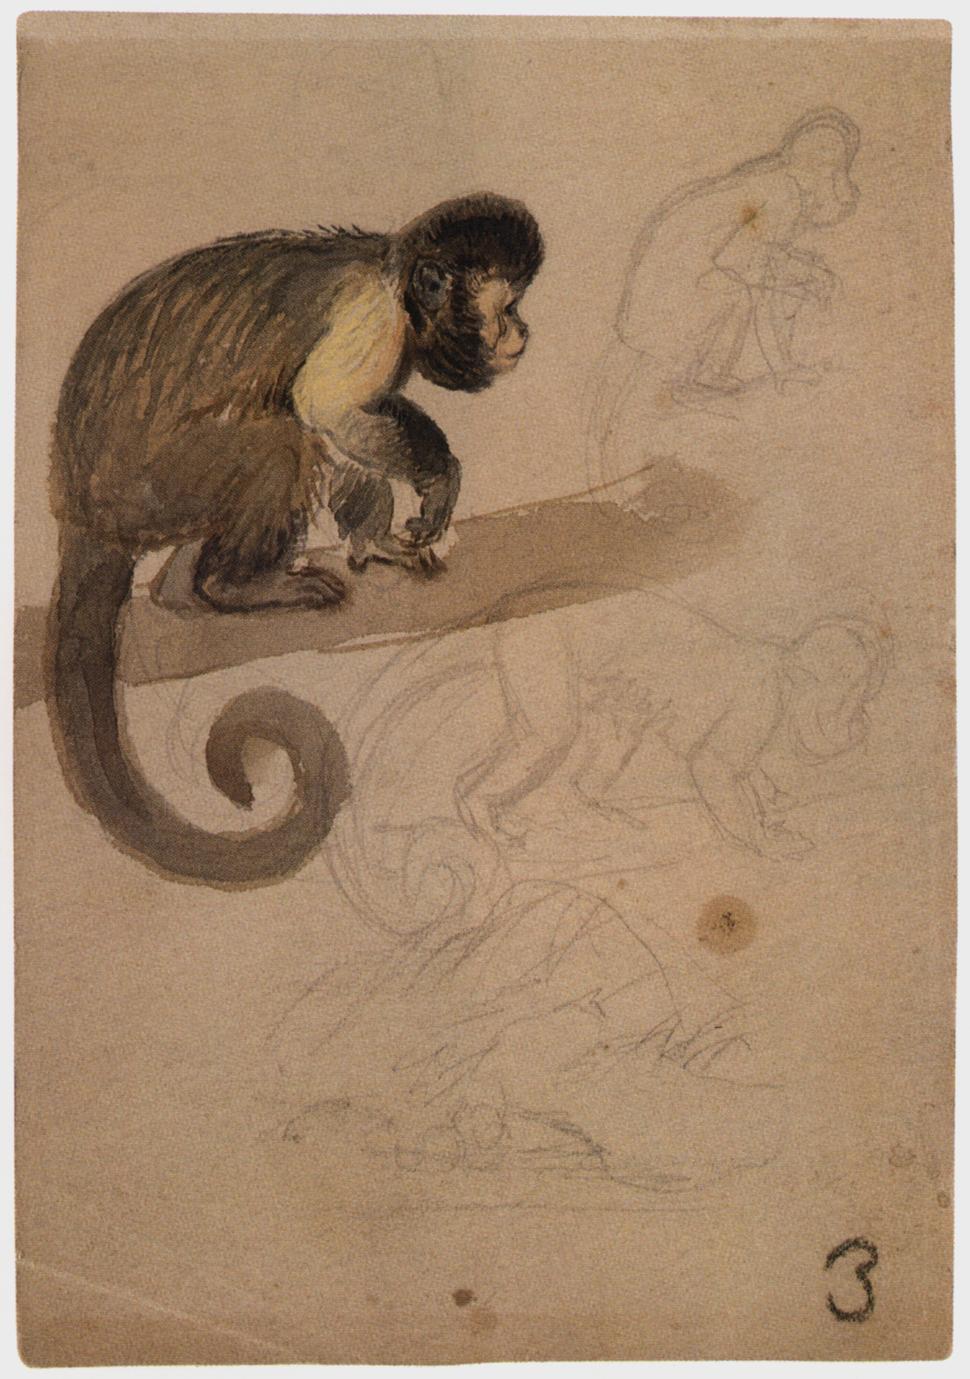 Capuchin Sketch